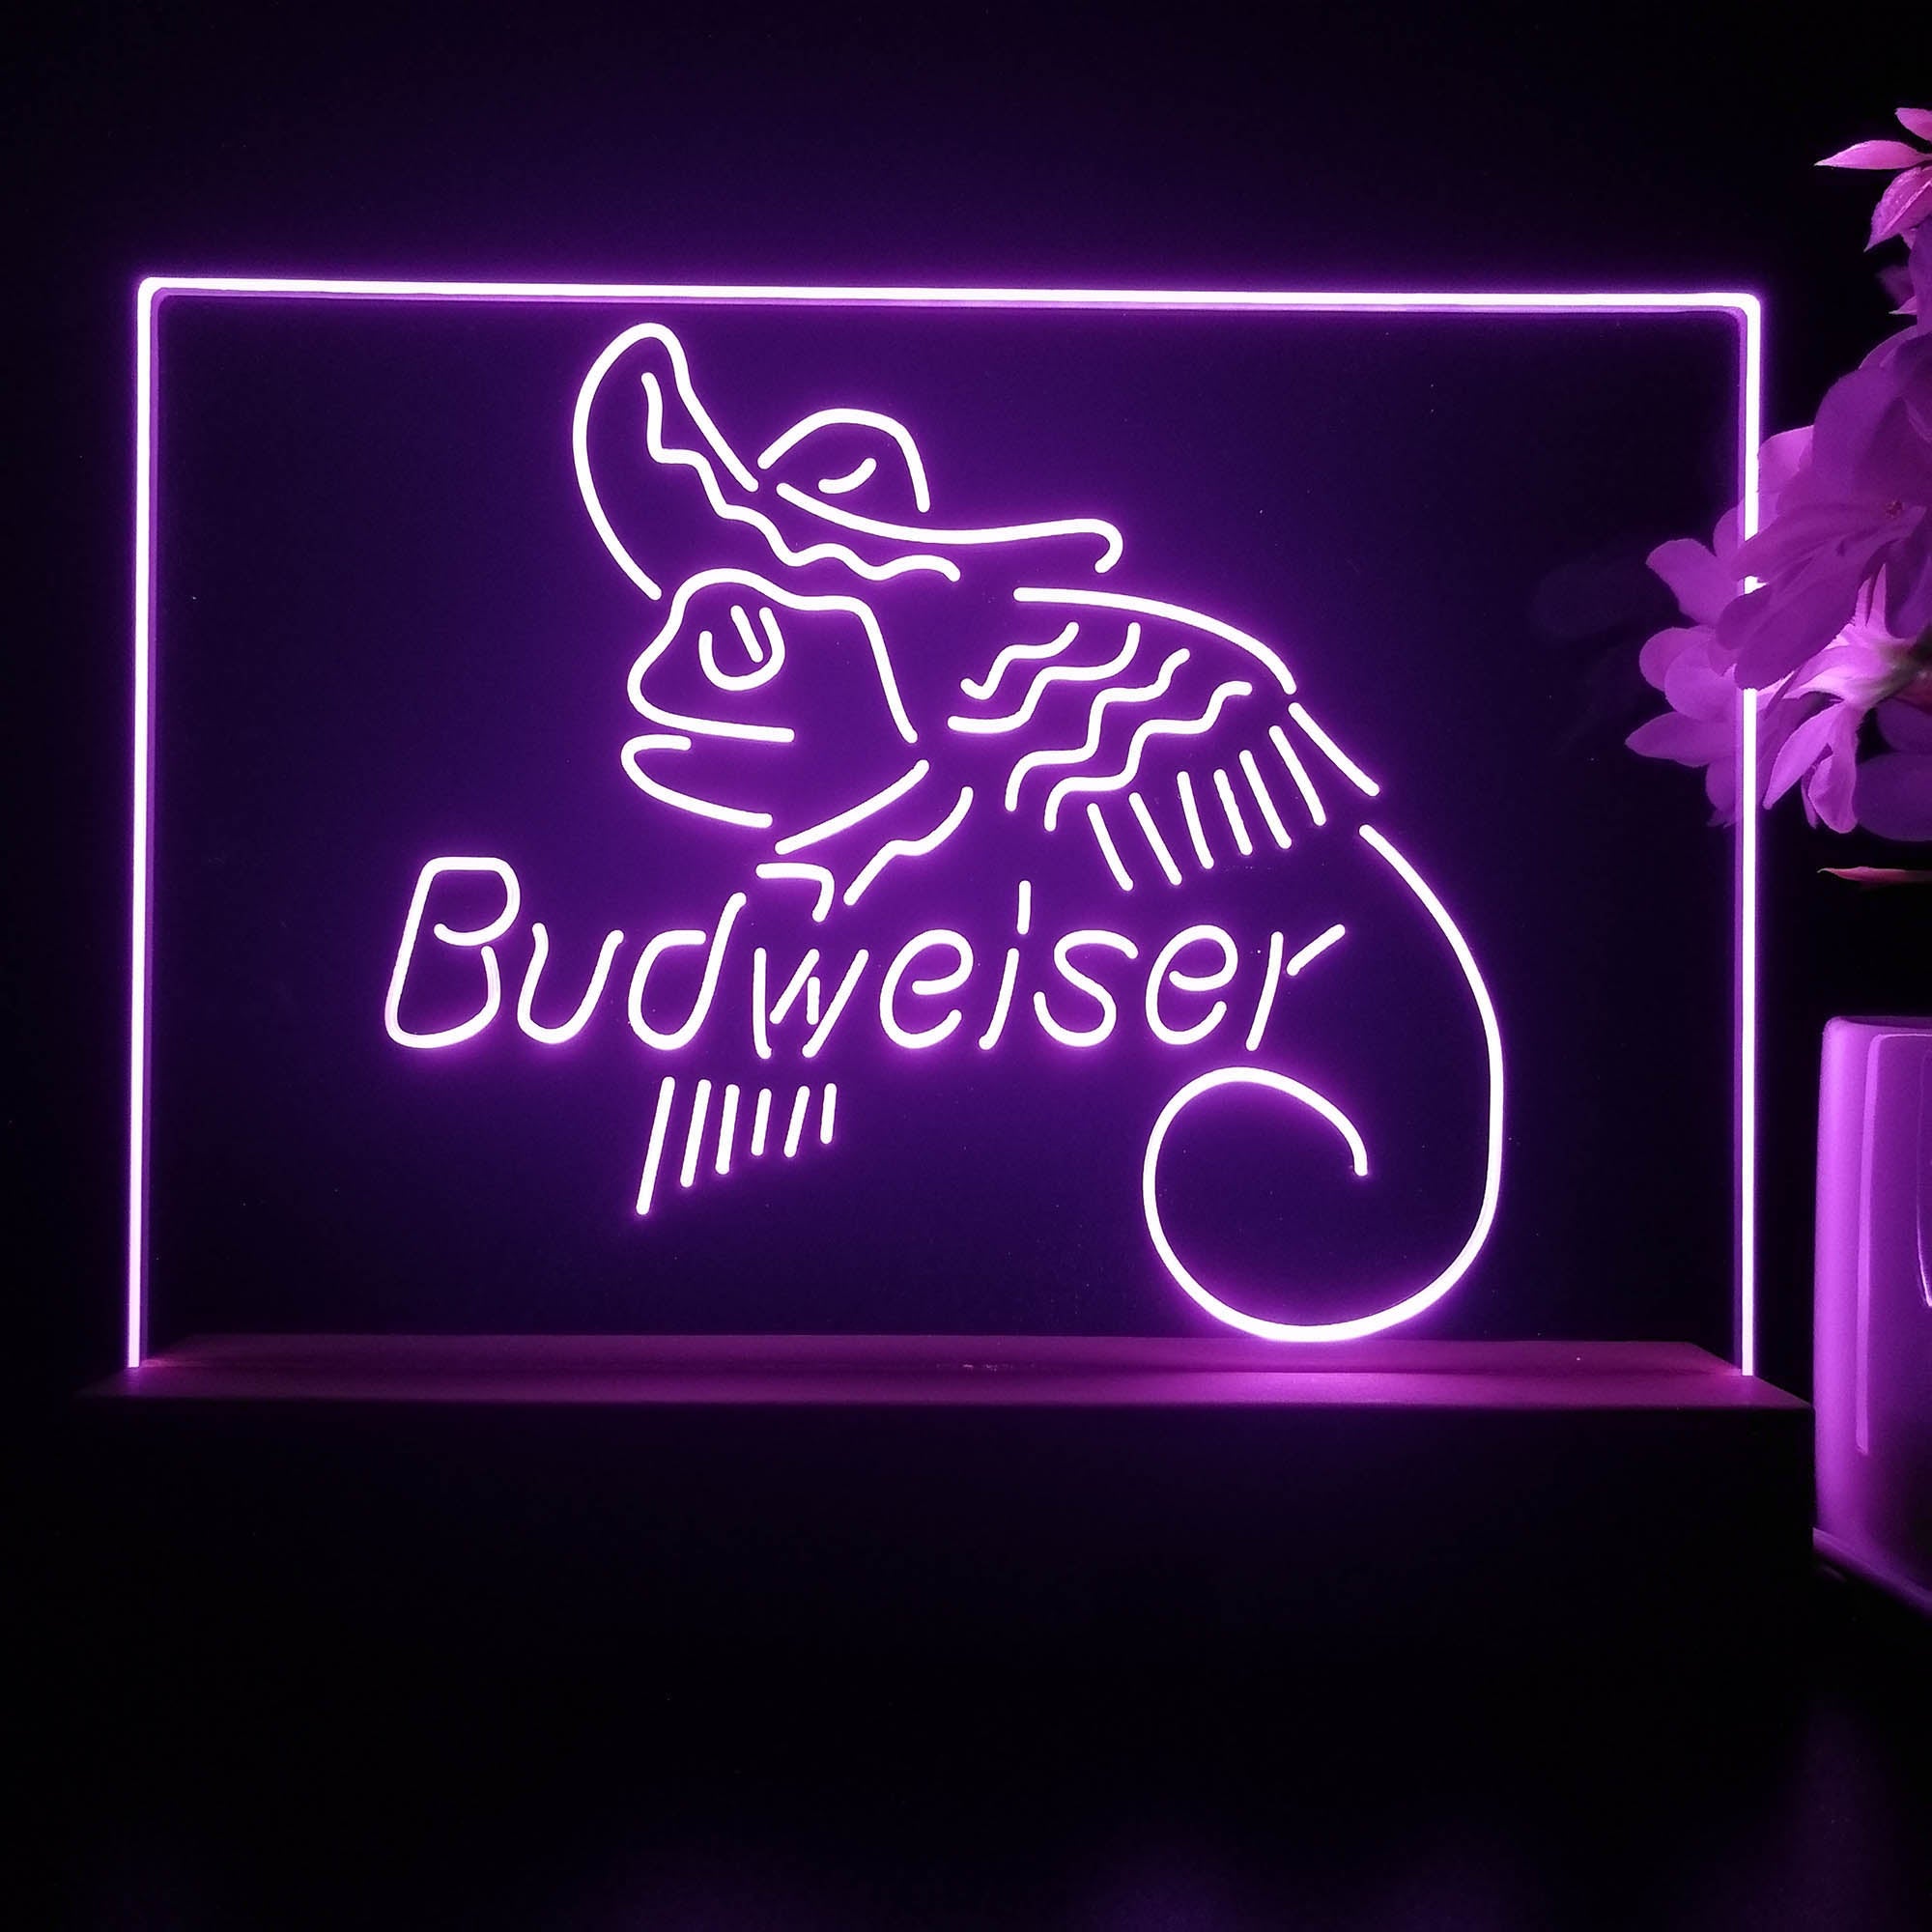 Budweiser Lizard Cowboys Mexico Neon Sign Pub Bar Lamp